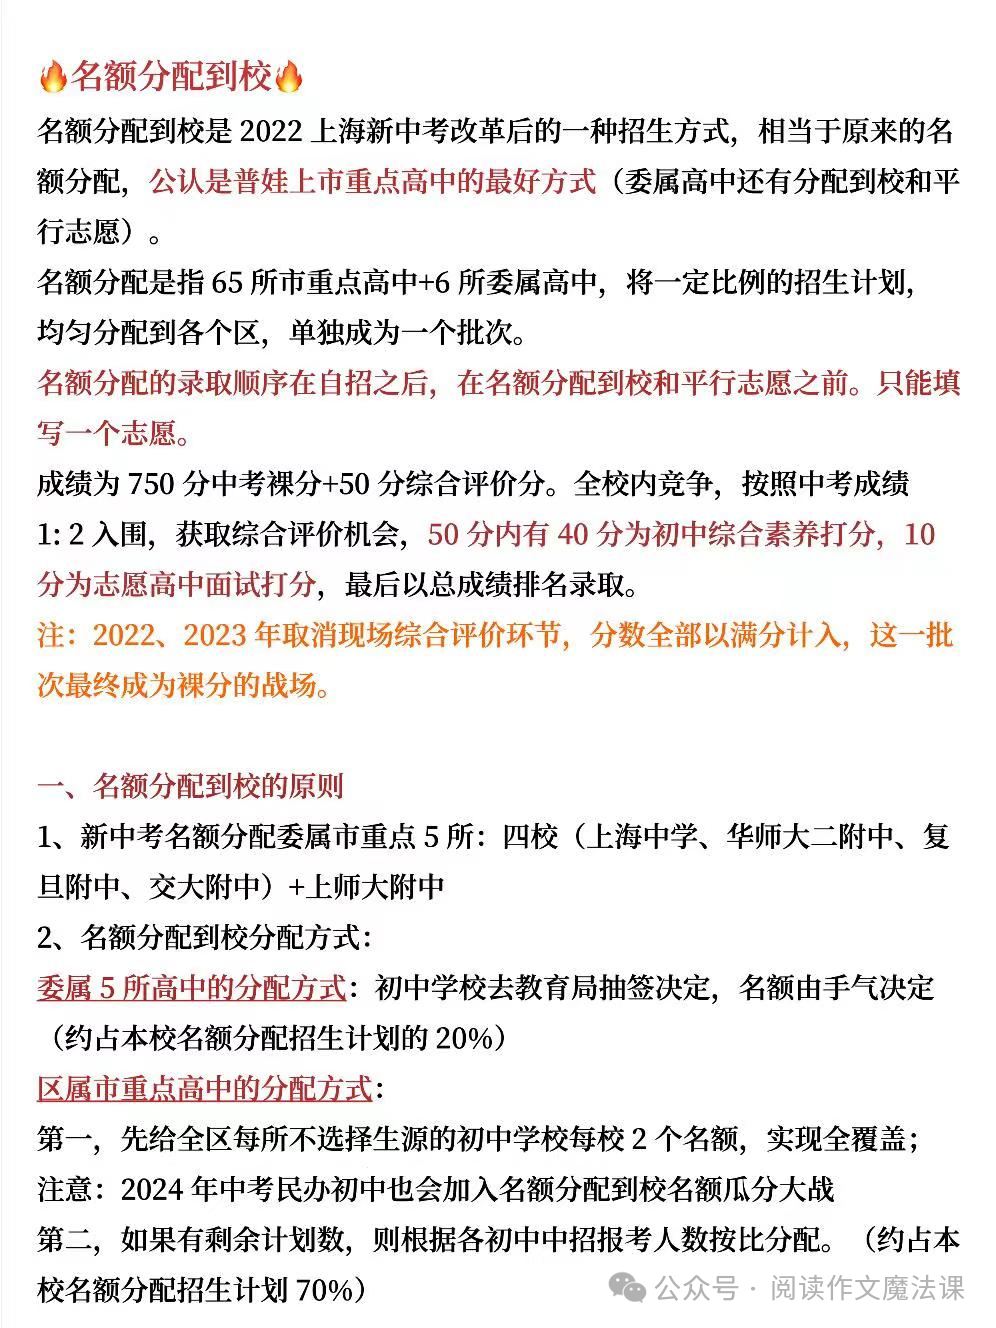 中考攻略:上海中考名额分配详解 第2张